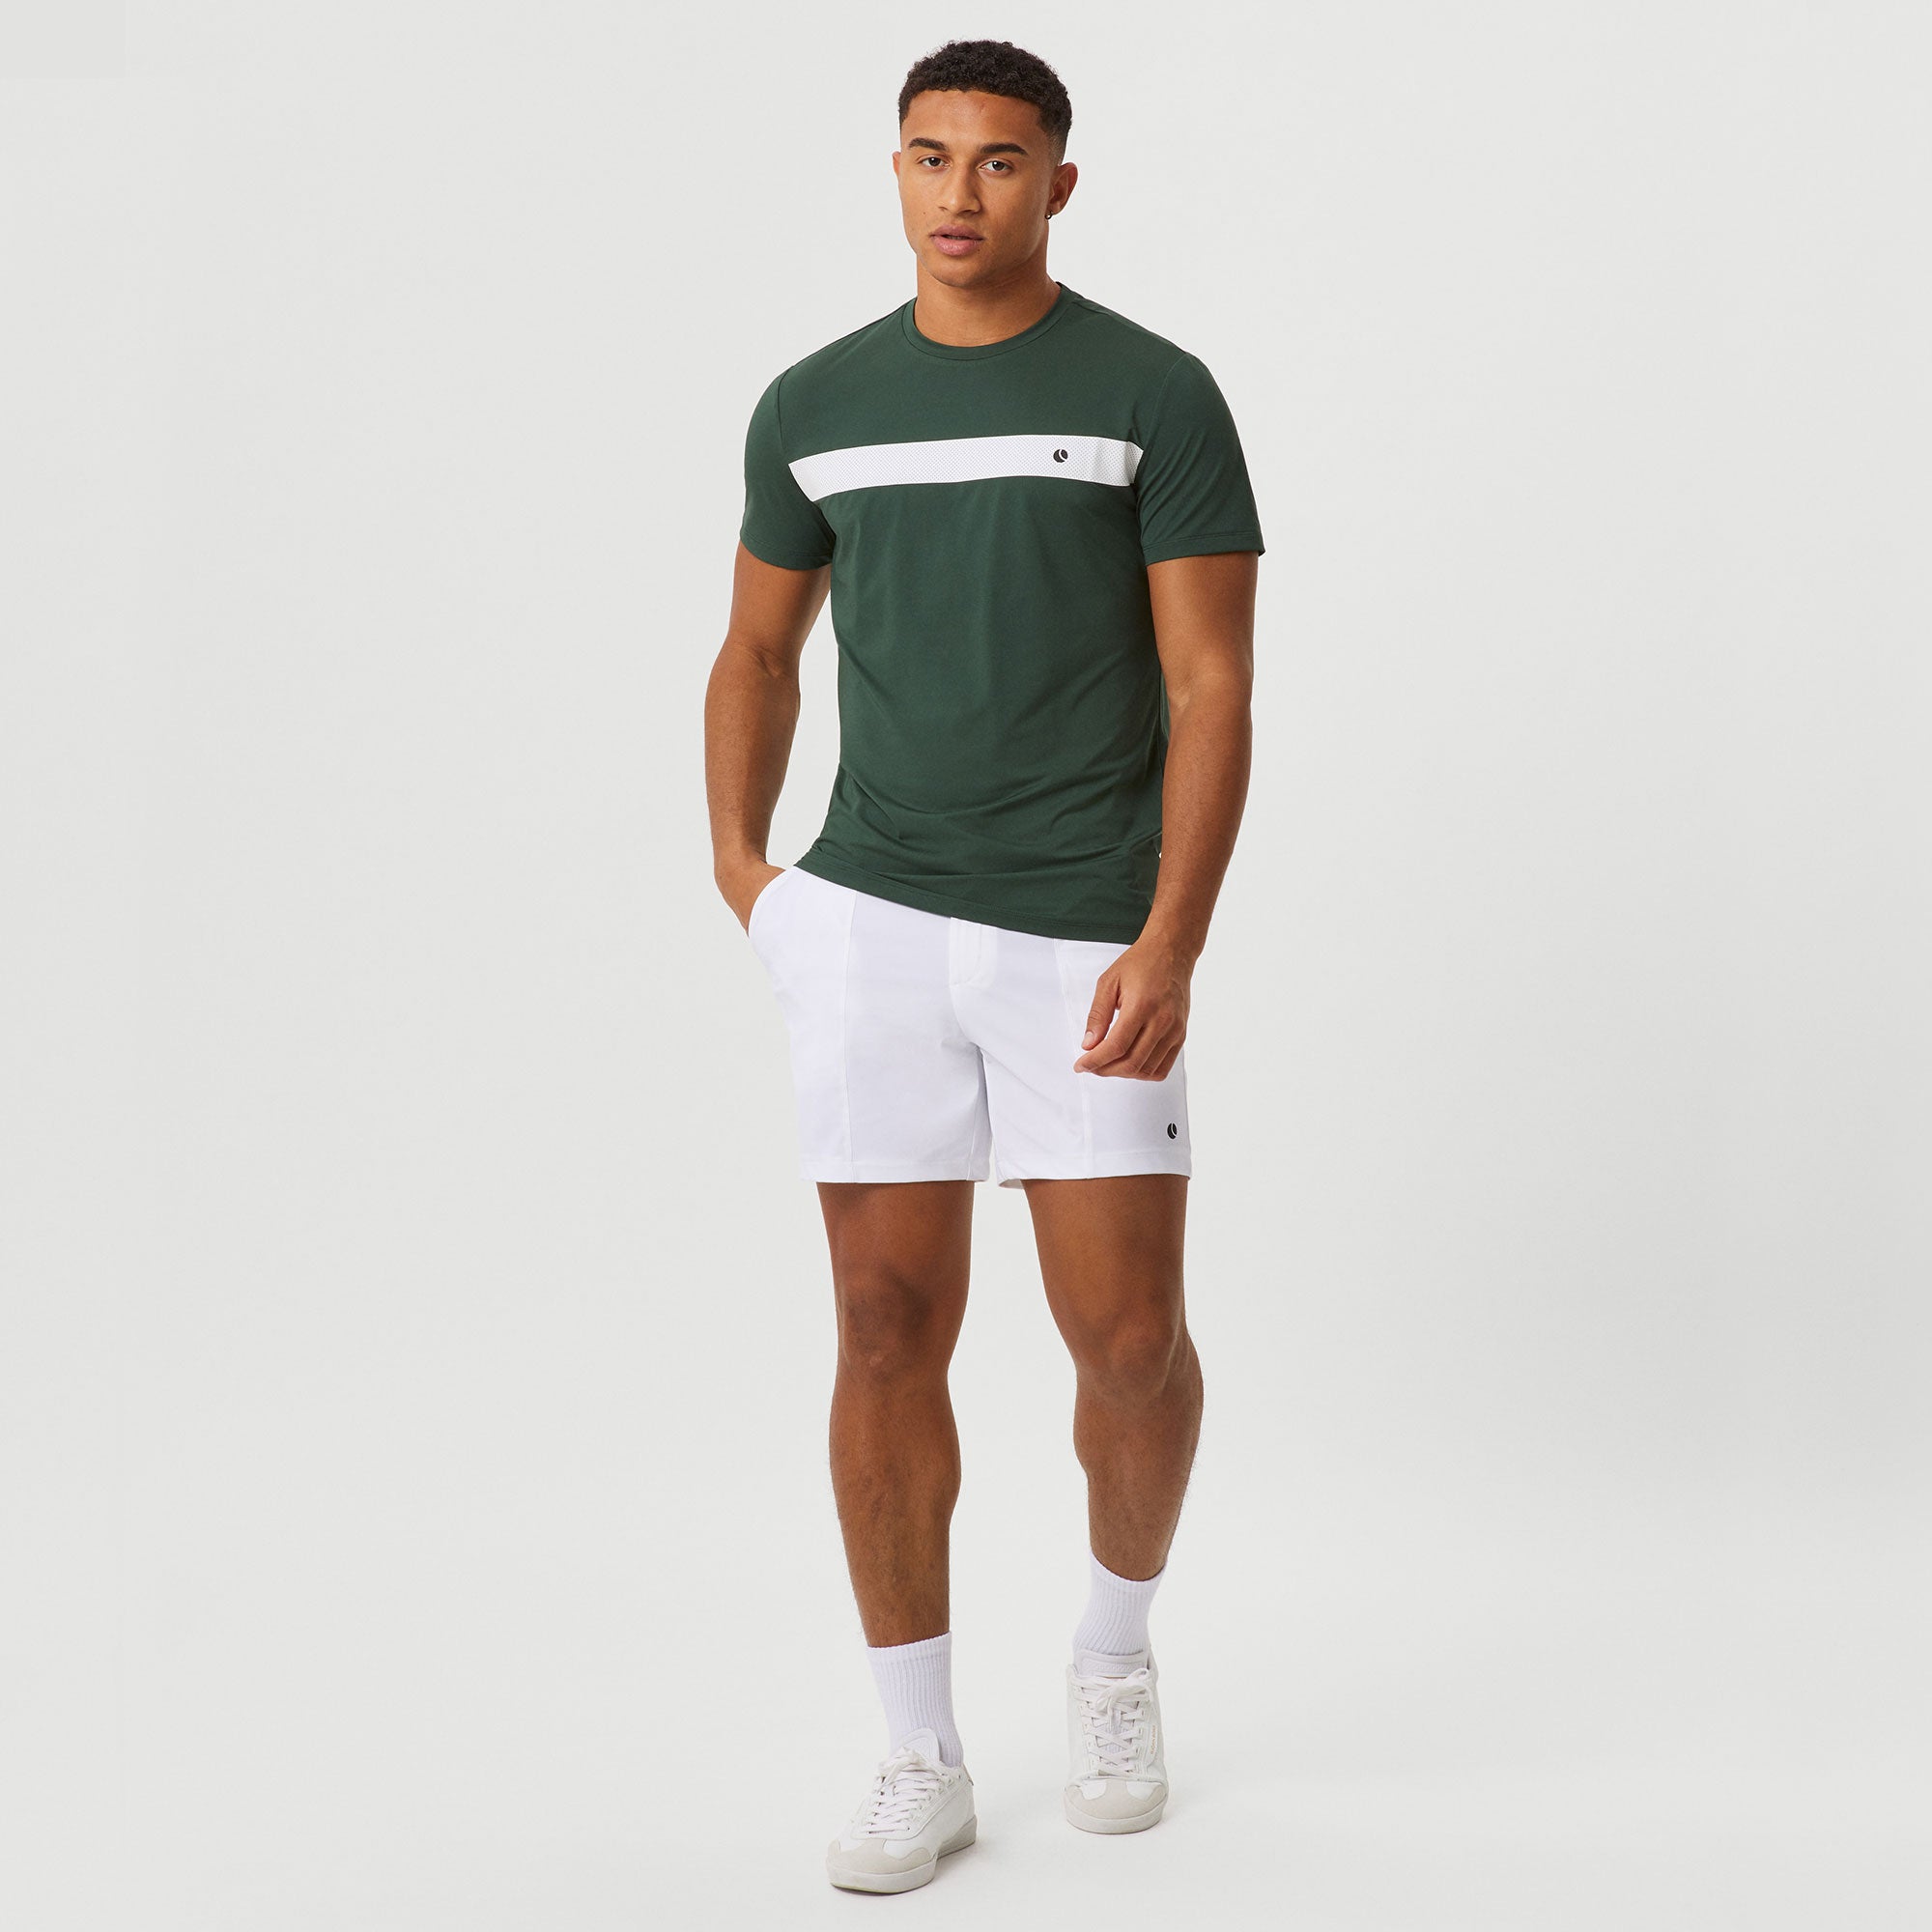 Björn Borg Ace Men's Light Tennis Shirt - Green (3)